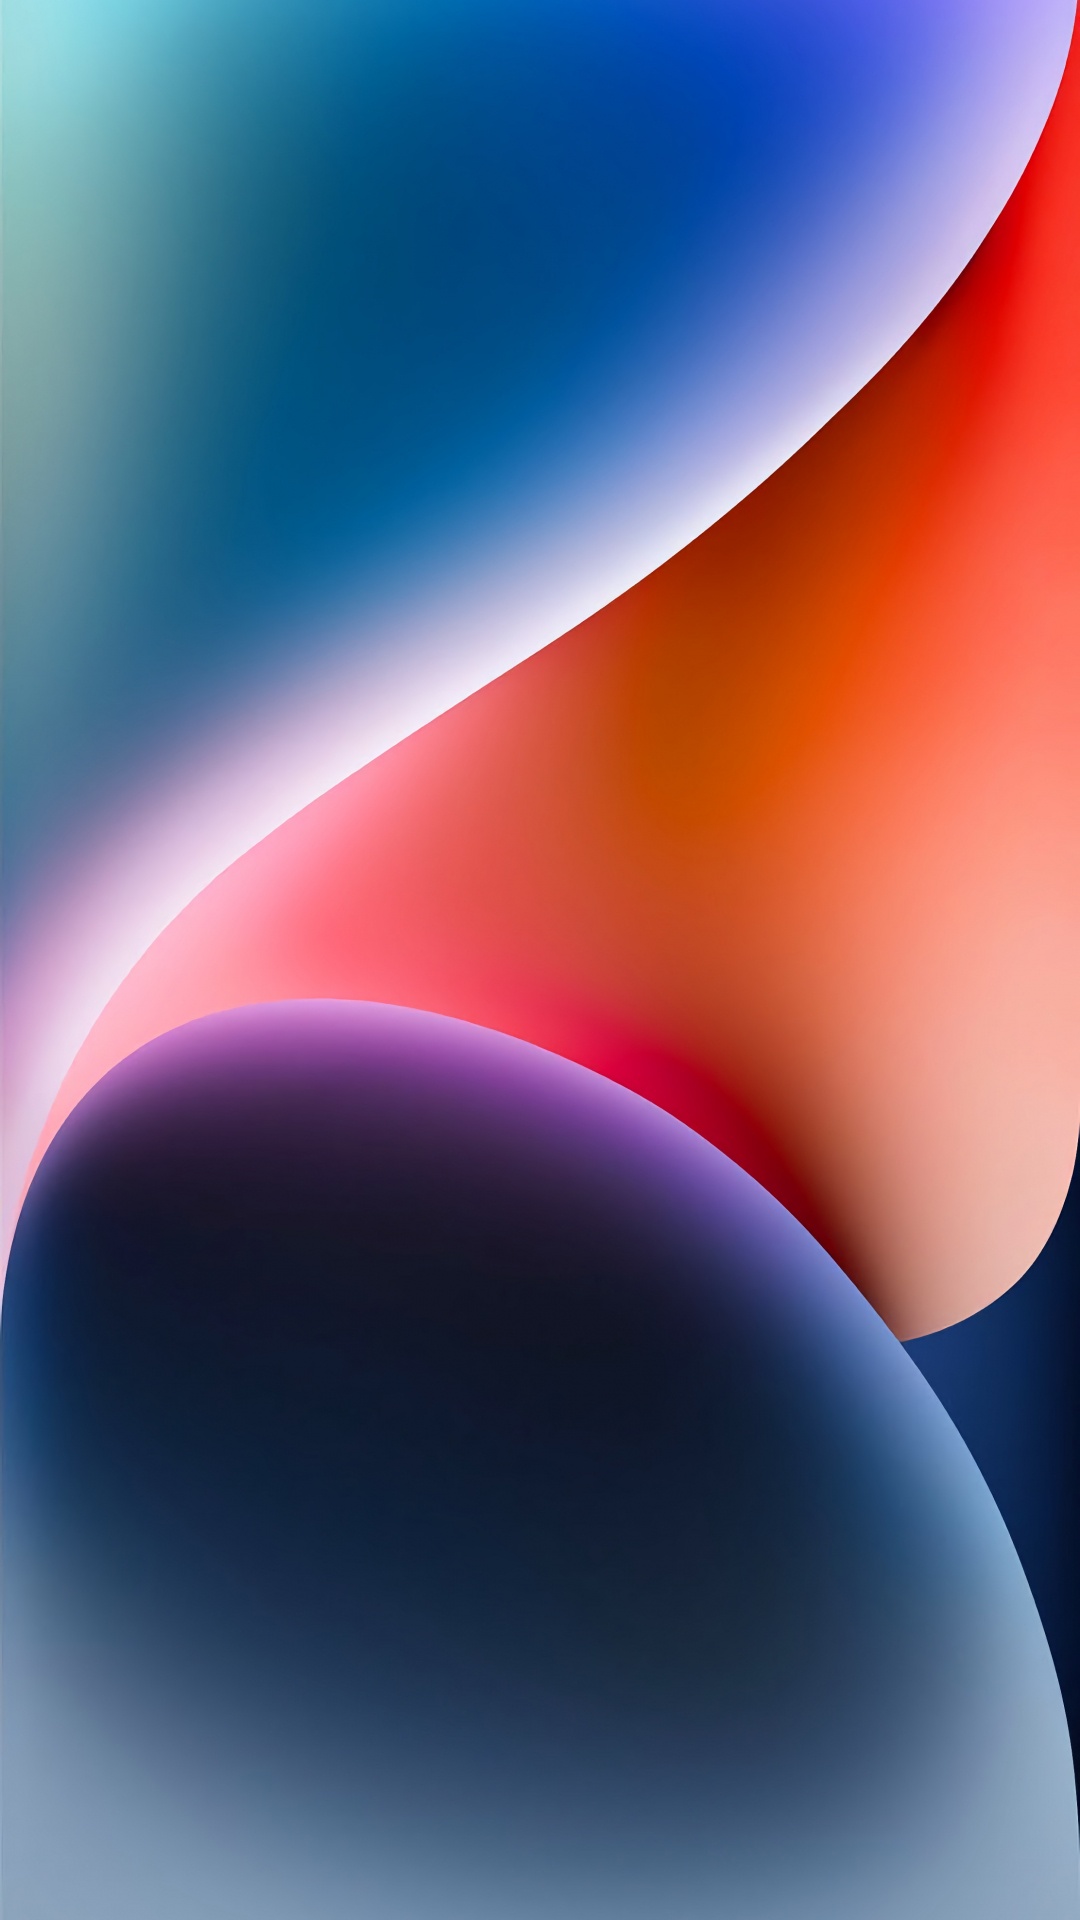 68+] Apple Vs Android Wallpaper - WallpaperSafari